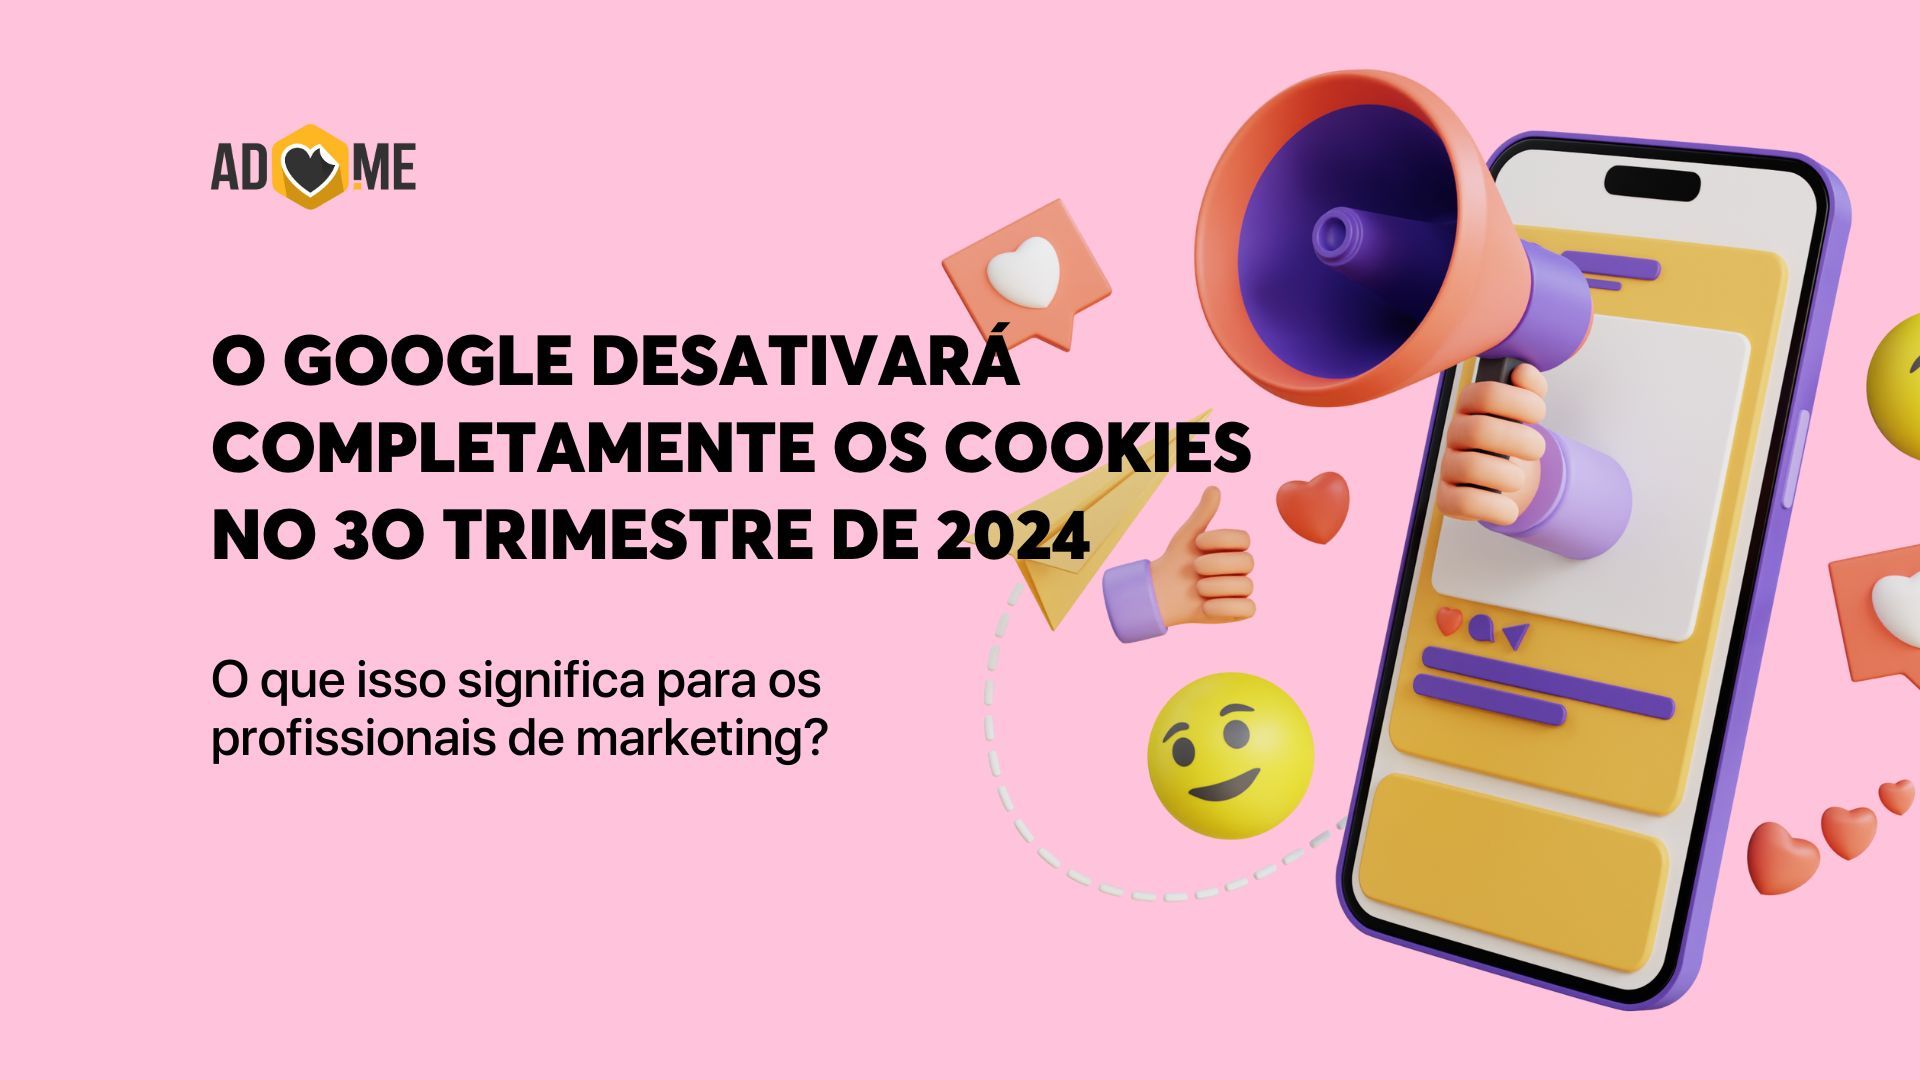 O Google desativará completamente os cookies no 3o trimestre de 2024. O que isso significa para os profissionais de marketing?